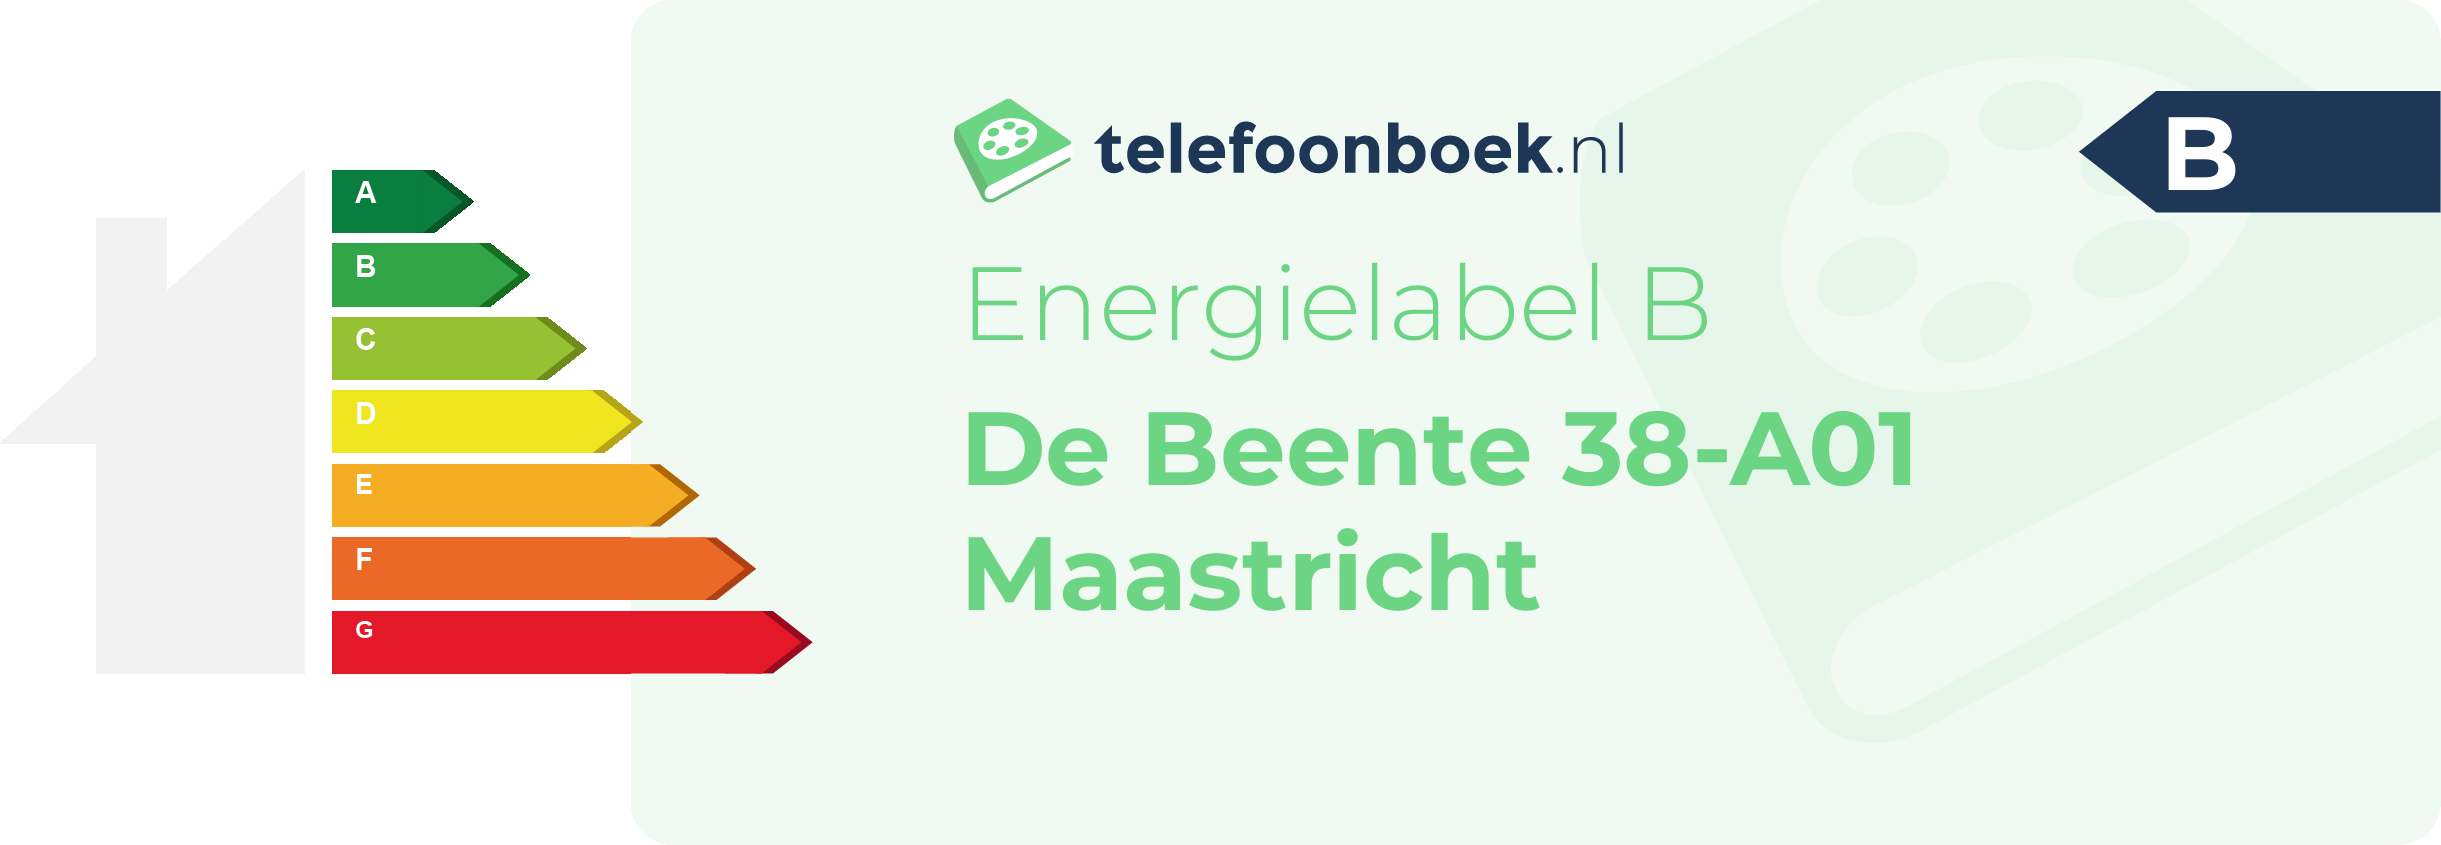 Energielabel De Beente 38-A01 Maastricht